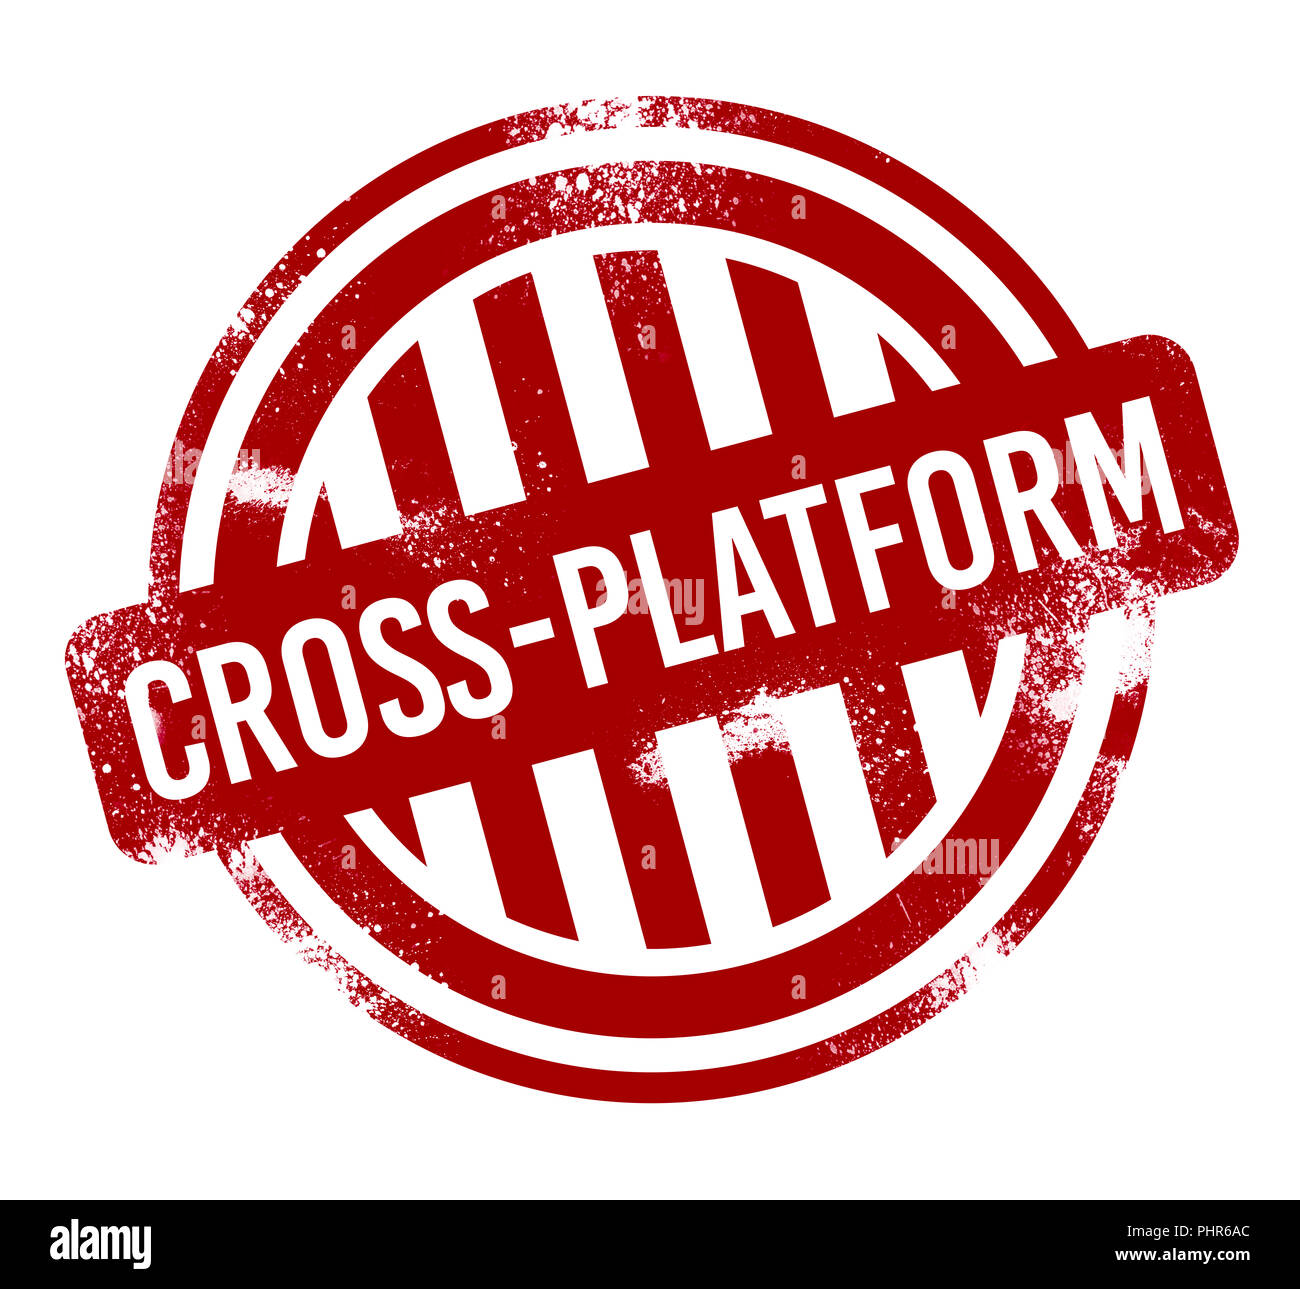 Cross-platform-rot grunge-Taste, Stempel Stockfoto